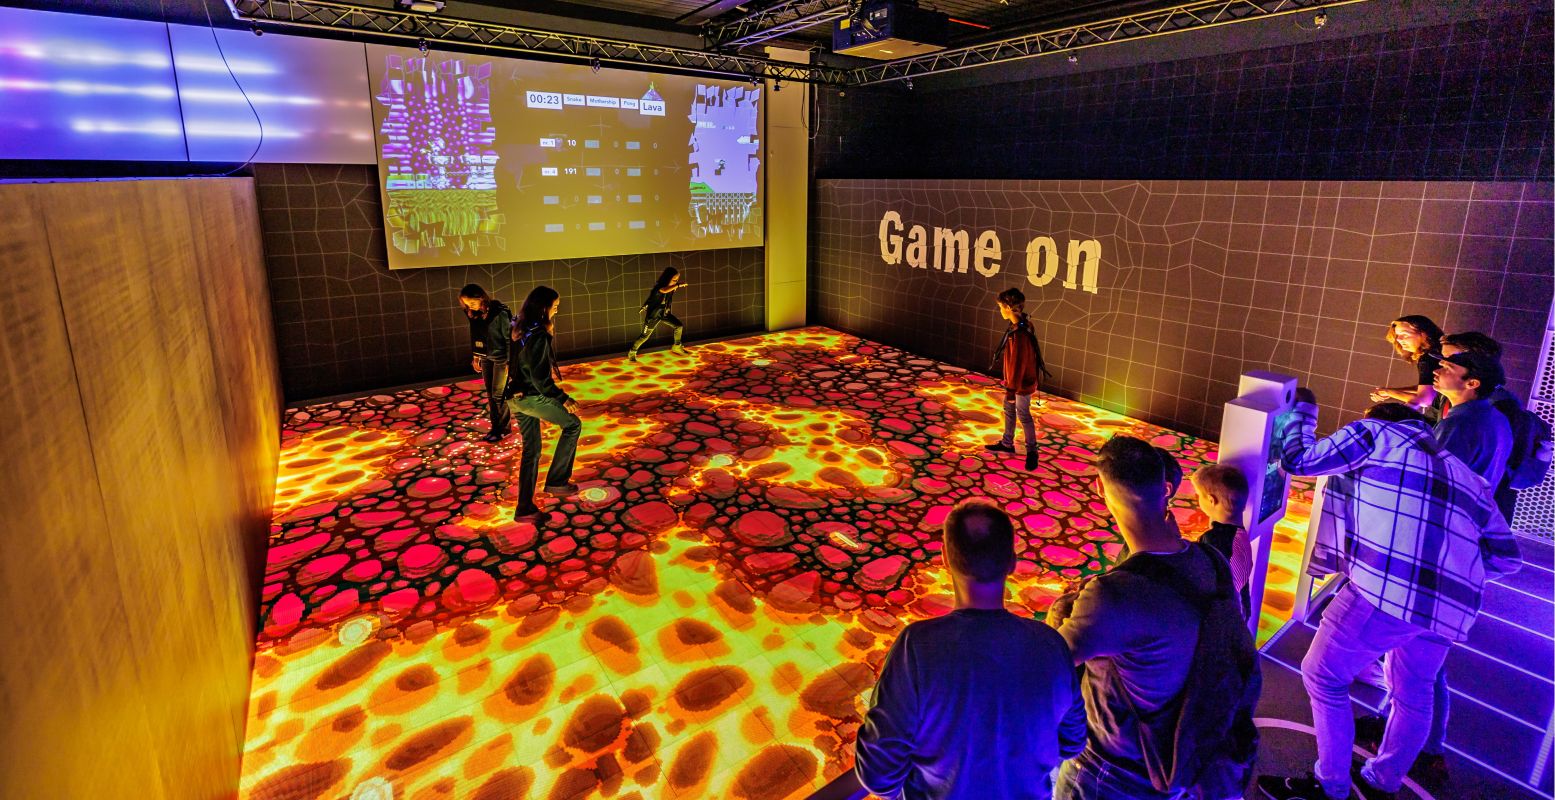 Test de gamevloer en zie hoe games worden ontworpen in het nieuwe Mediamuseum. Foto: Jorrit Lousberg